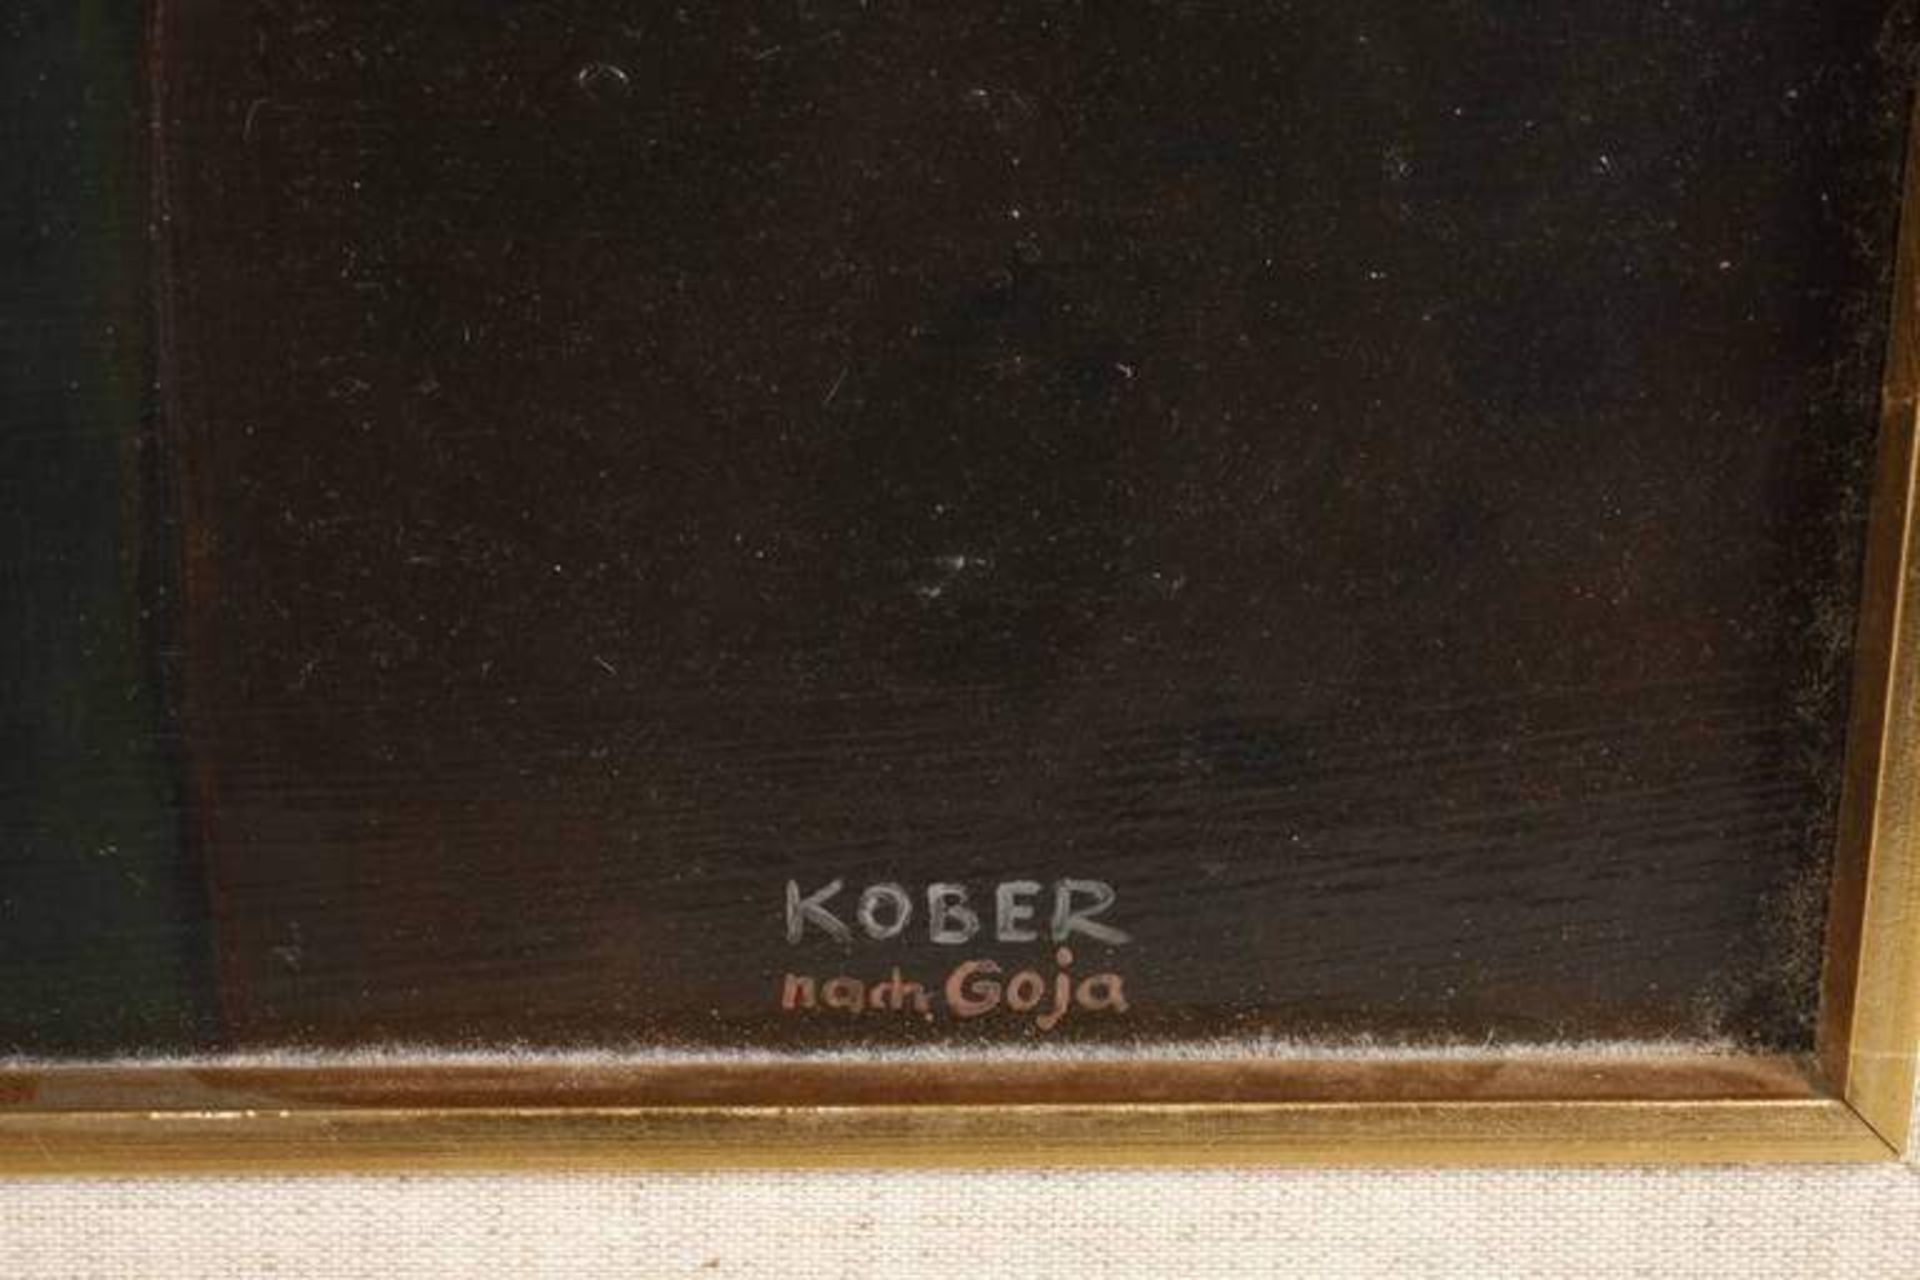 Paul Kober, "Die nackte Maja" nach Goya Bildnis einer nackten Schönheit mit üppigen Brüsten auf - Bild 2 aus 3